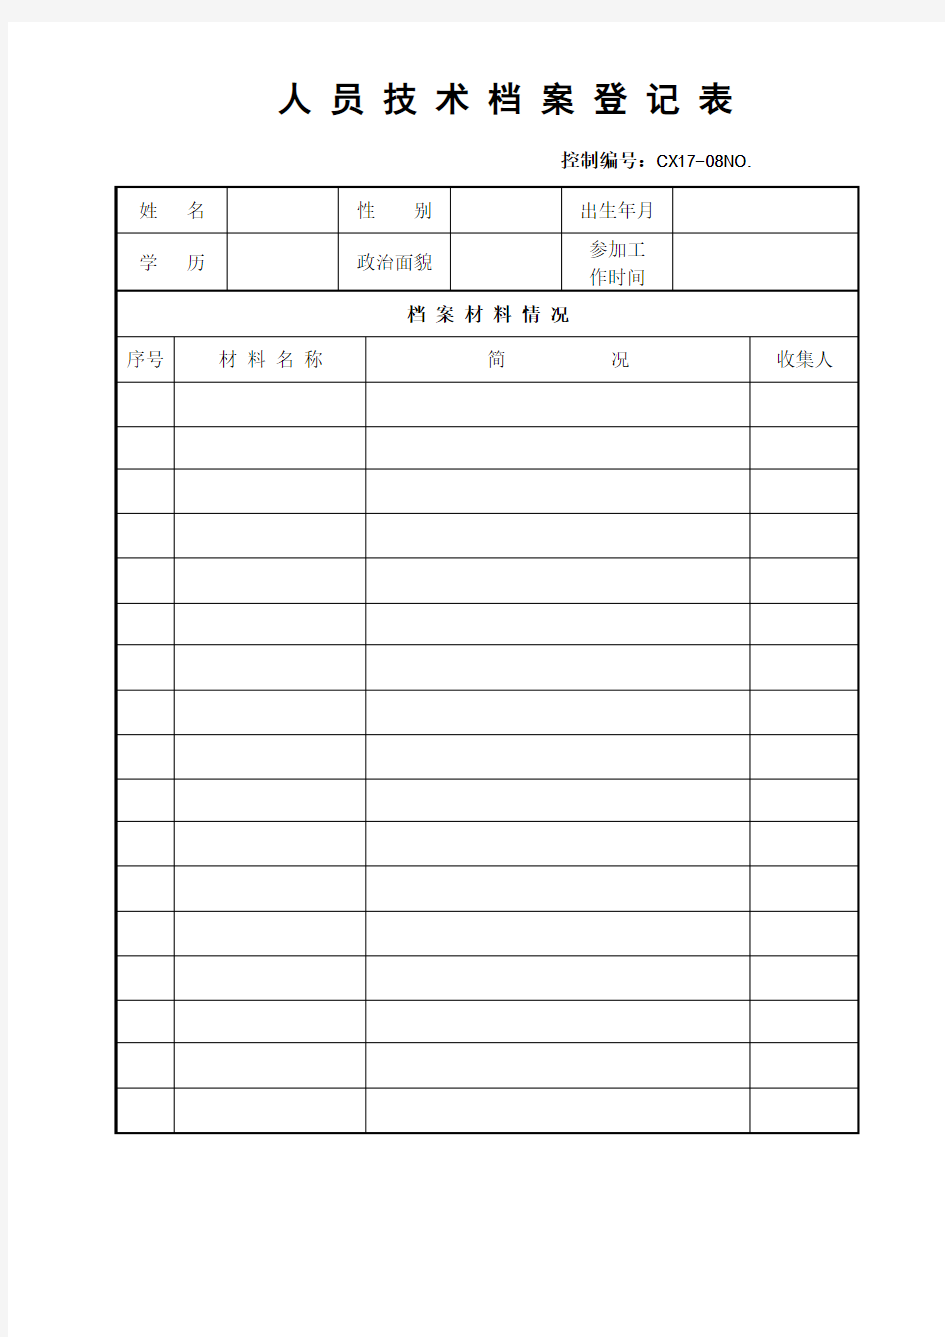 人员技术档案登记表